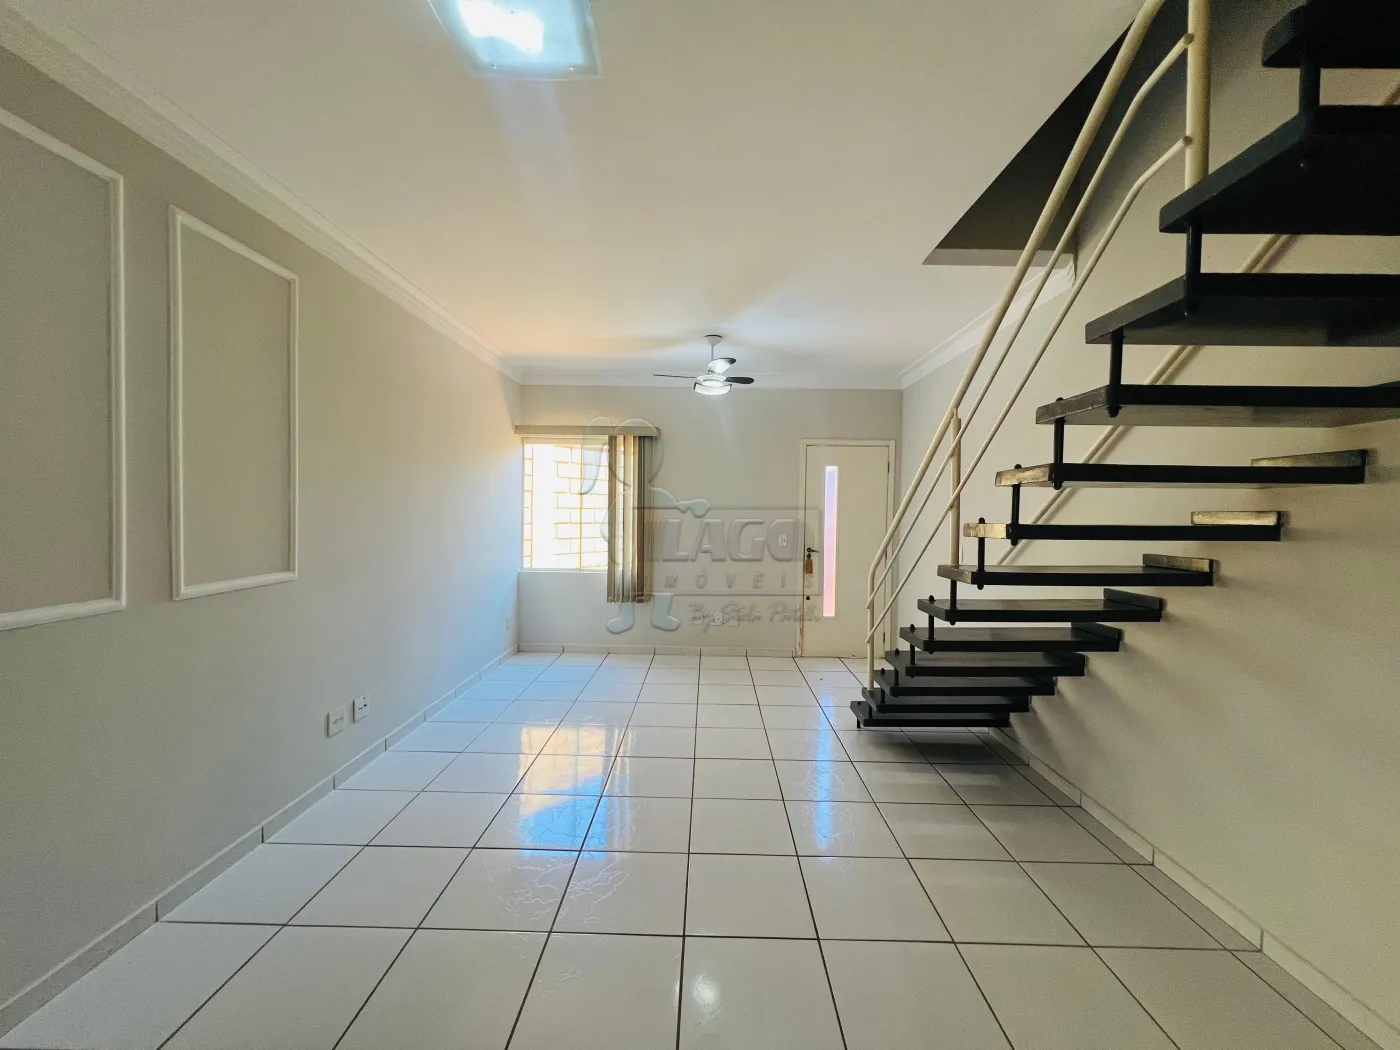 Comprar Casa condomínio / Padrão em Ribeirão Preto R$ 375.000,00 - Foto 4